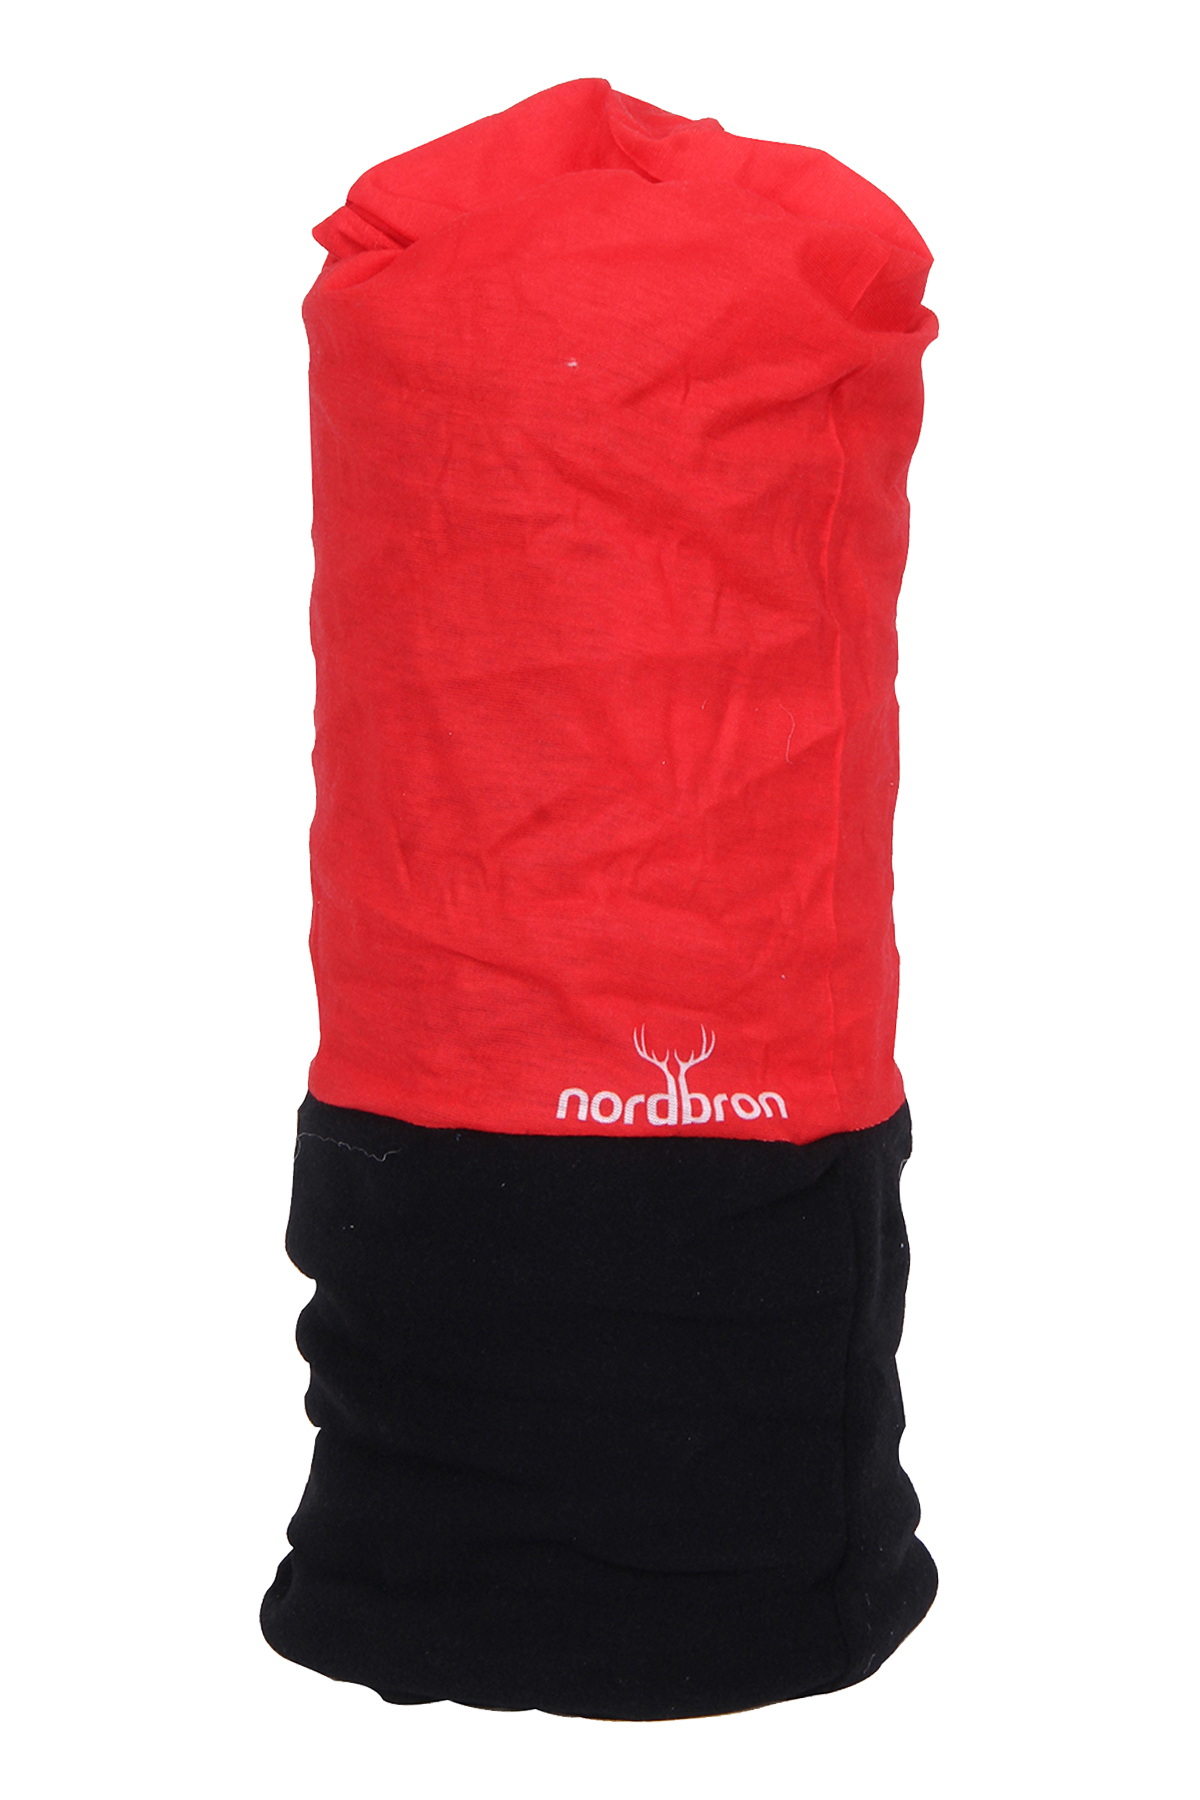 Nordbron 6101C - Uni Solid Çok Fonksiyonlu Kırmızı/Siyah Bandana